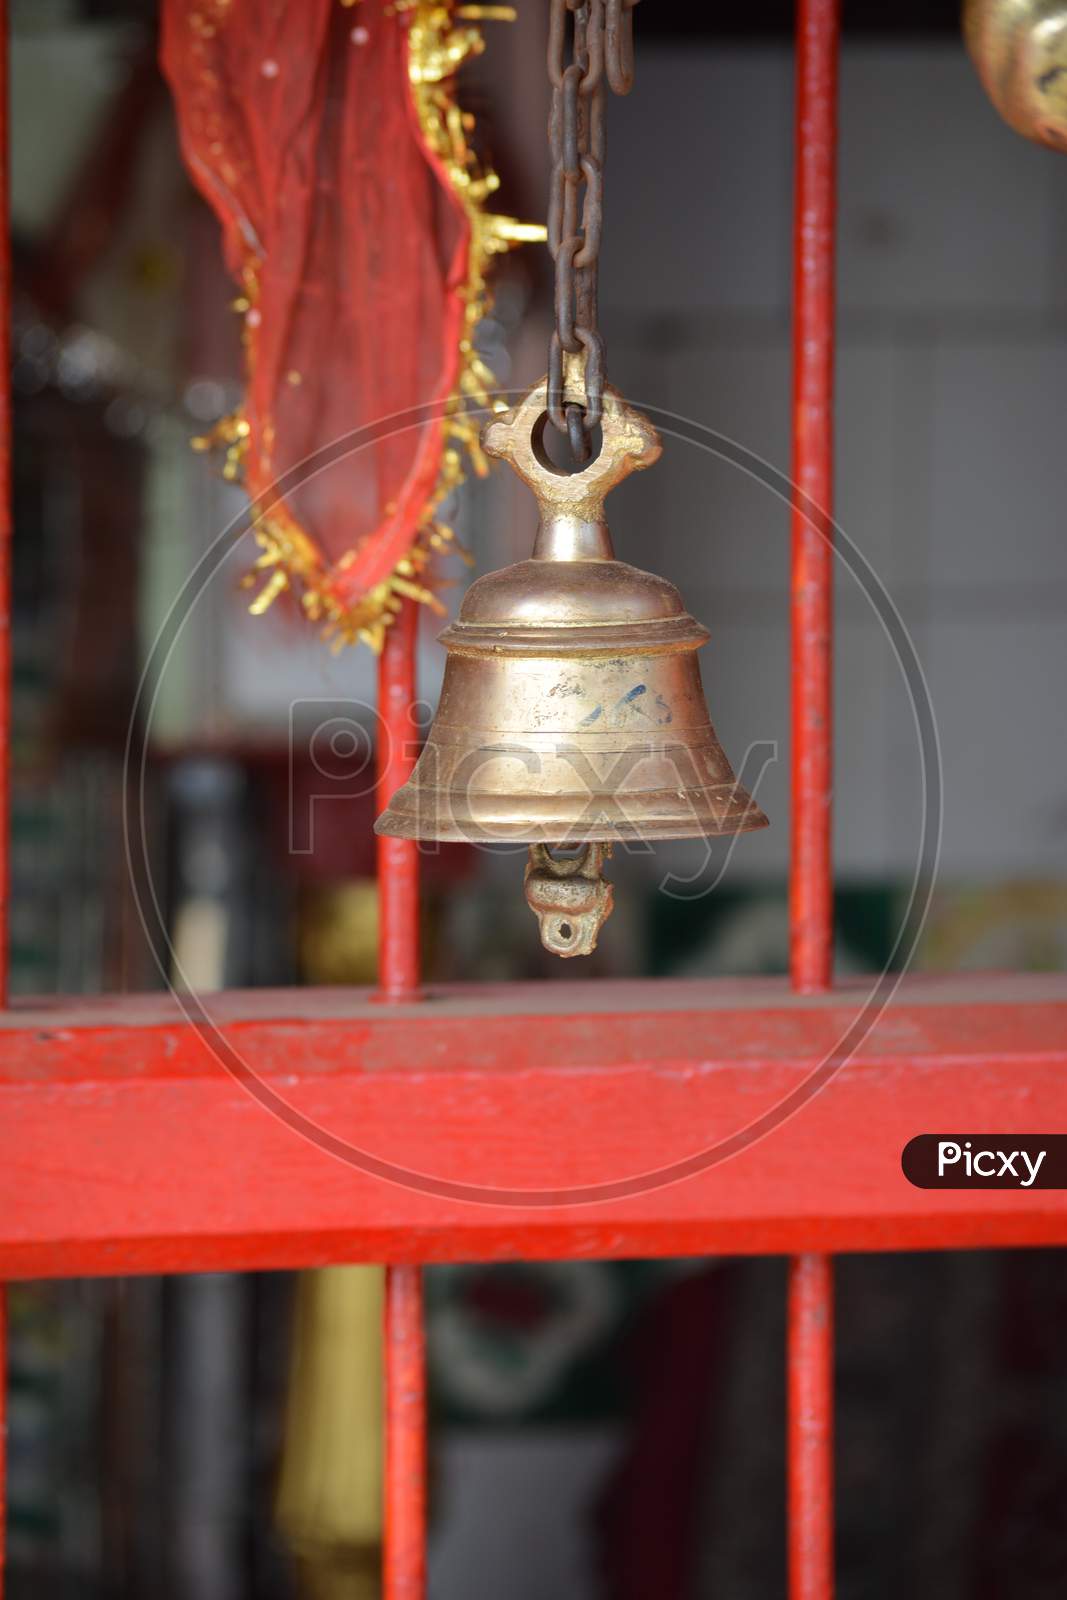 Ancient hanging bell at maa sharda temple, Madhya Pradesh, India.